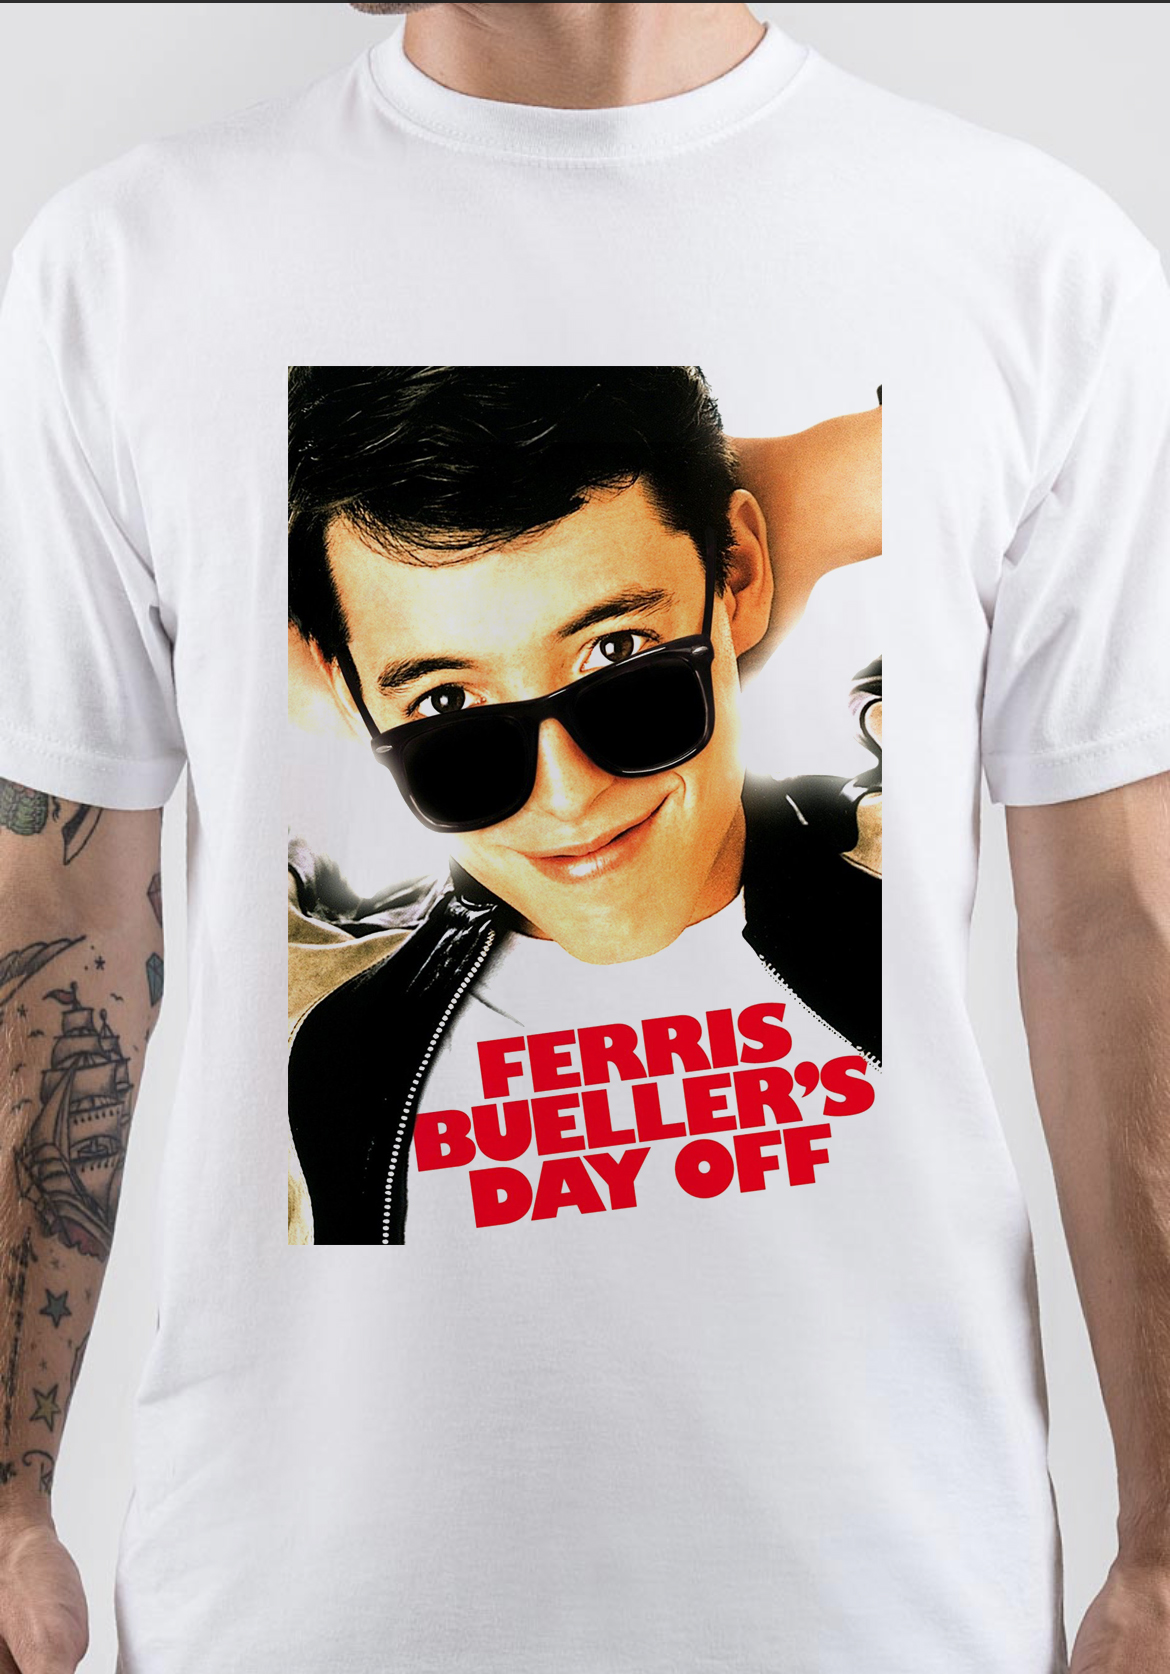 Ferris Bueller's Day Off T-Shirt And Merchandise